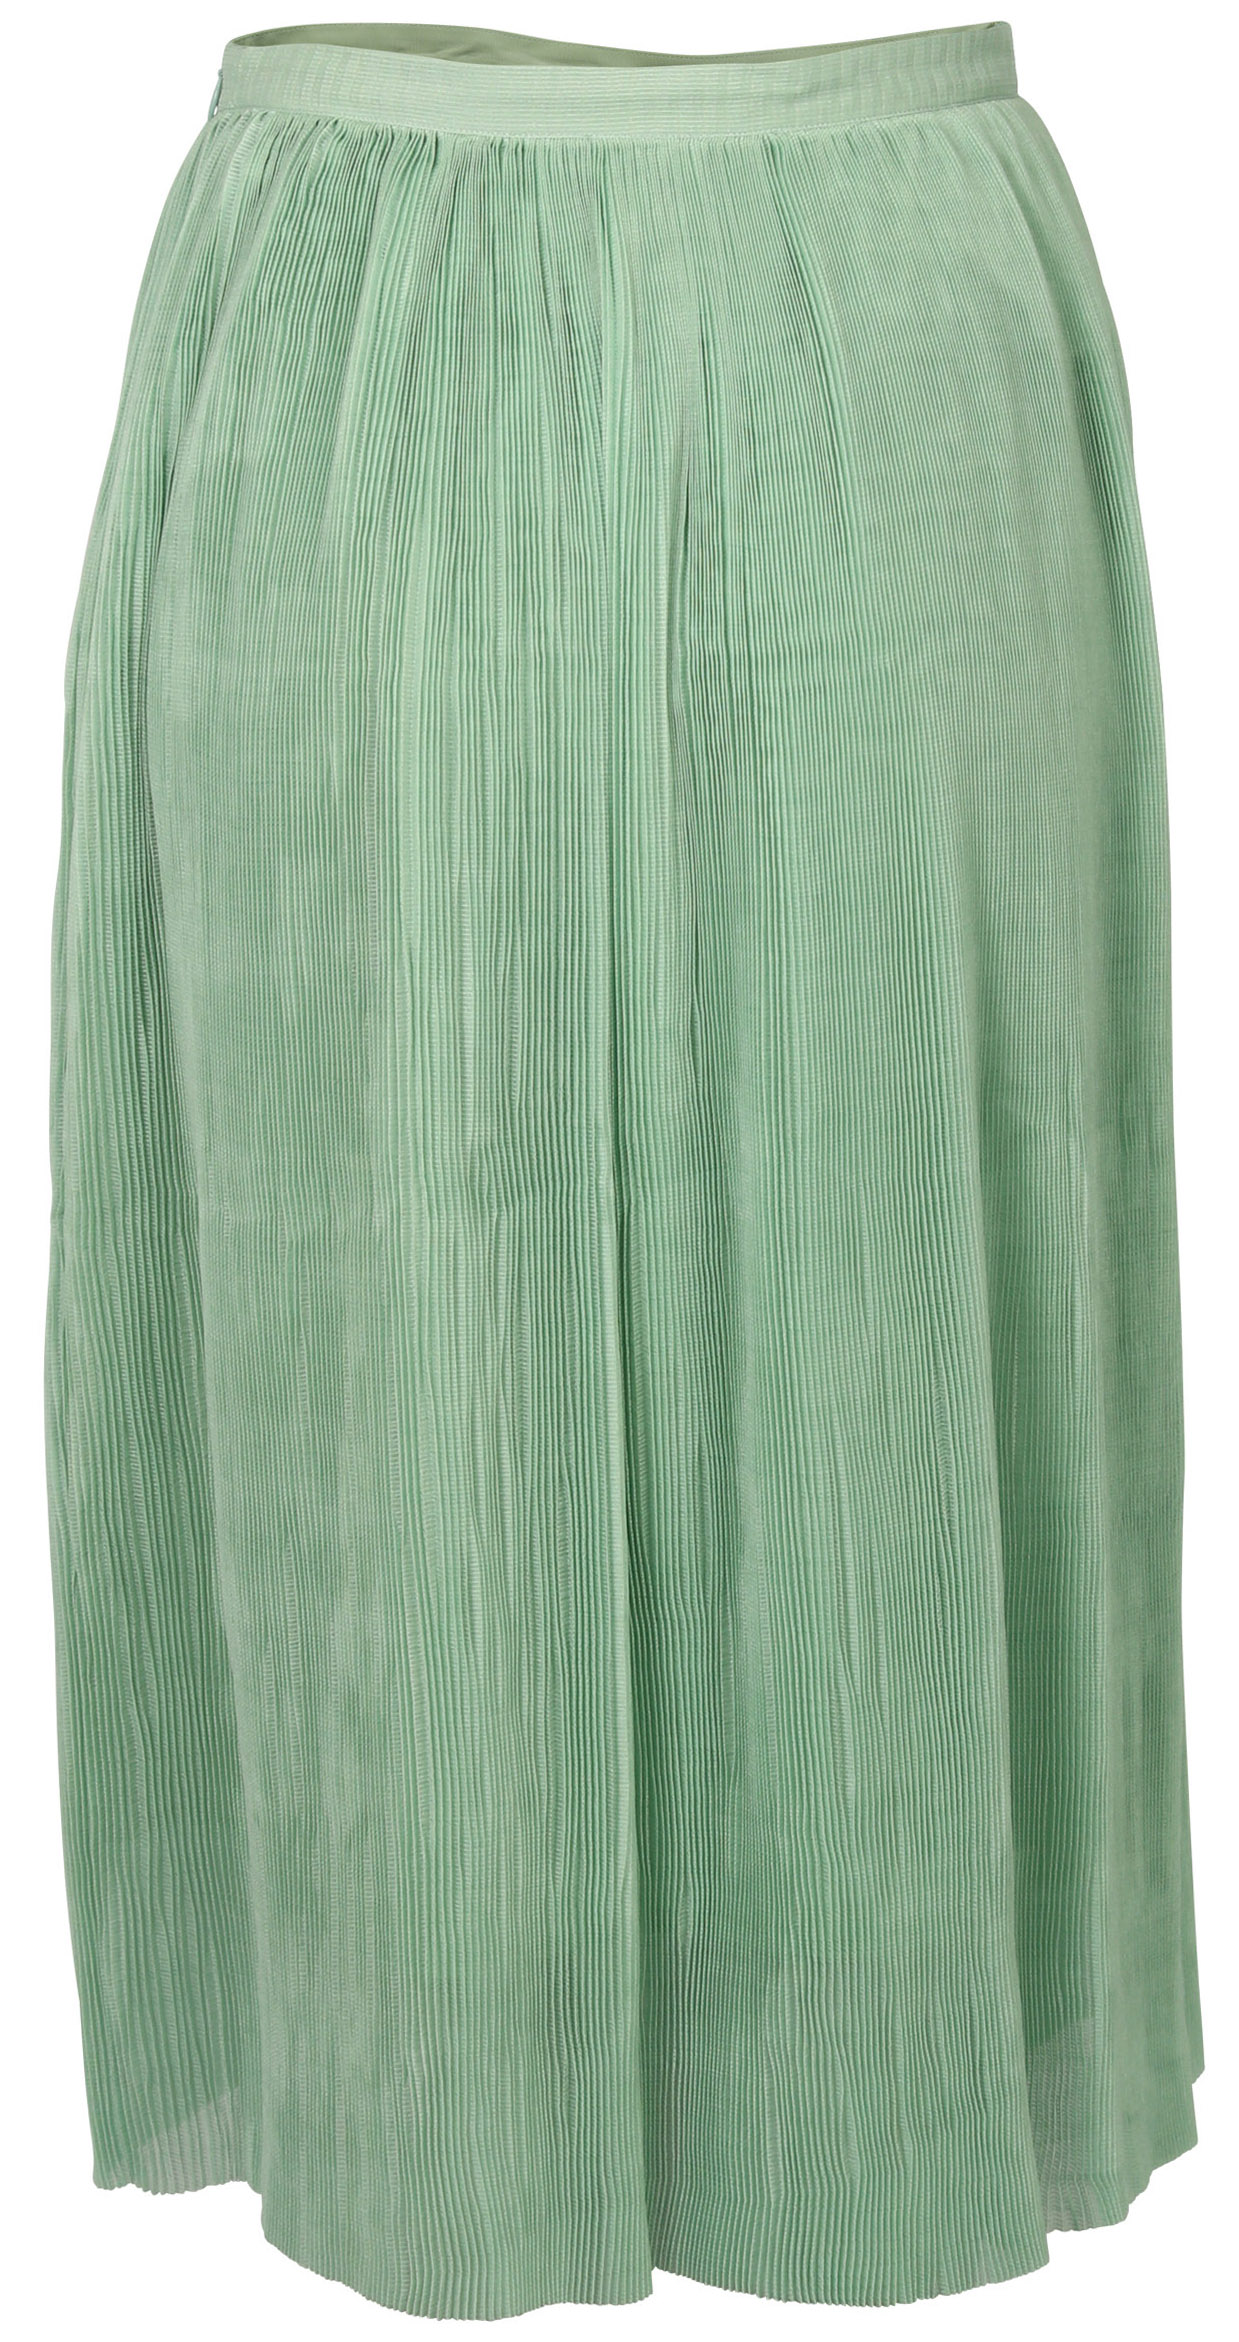 FWSS Skirt Thi Jade Green S